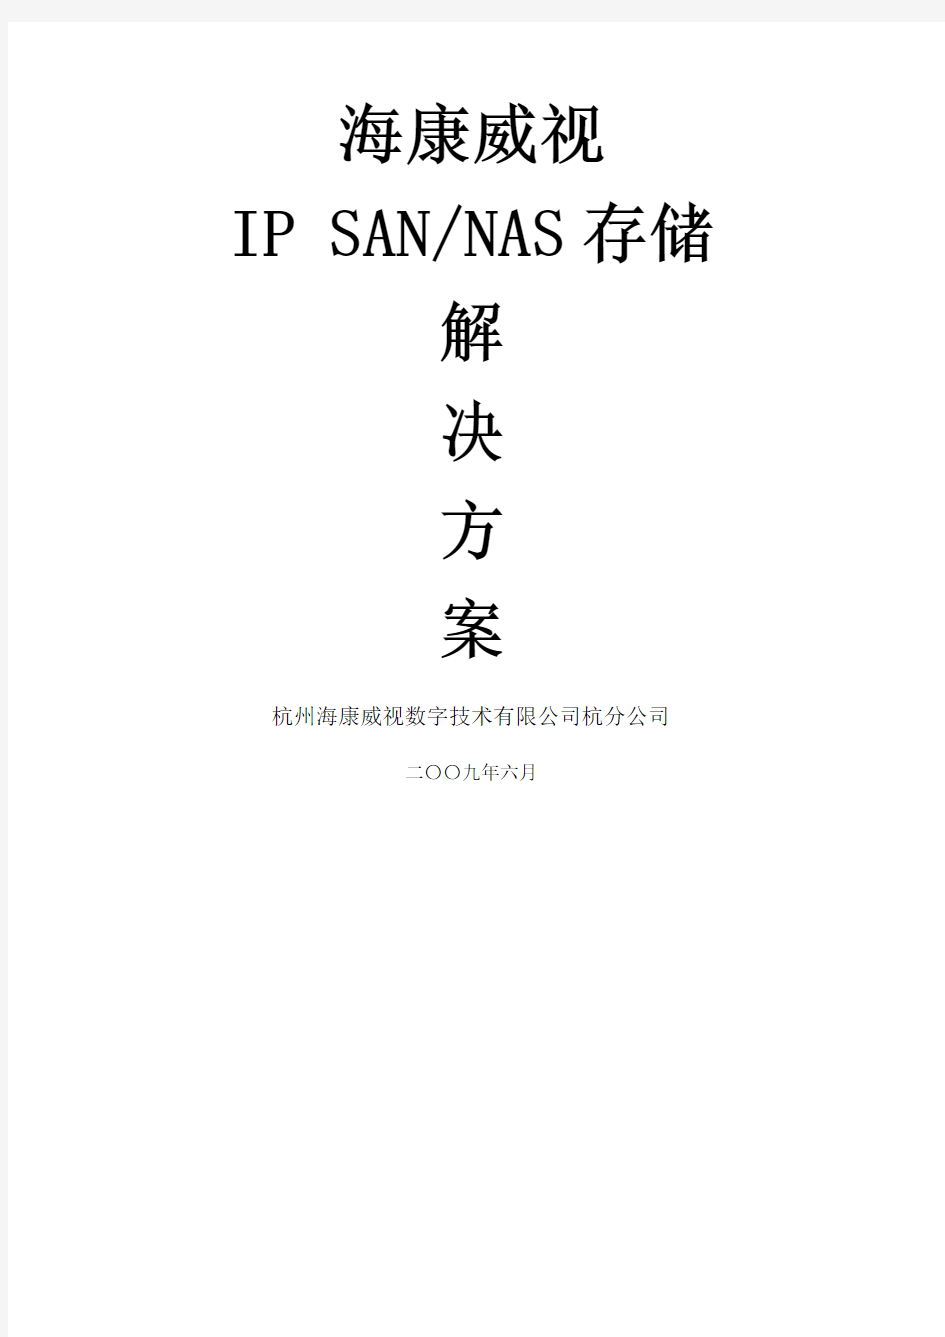 海康威视IP SANNAS监控存储解决方案_模版